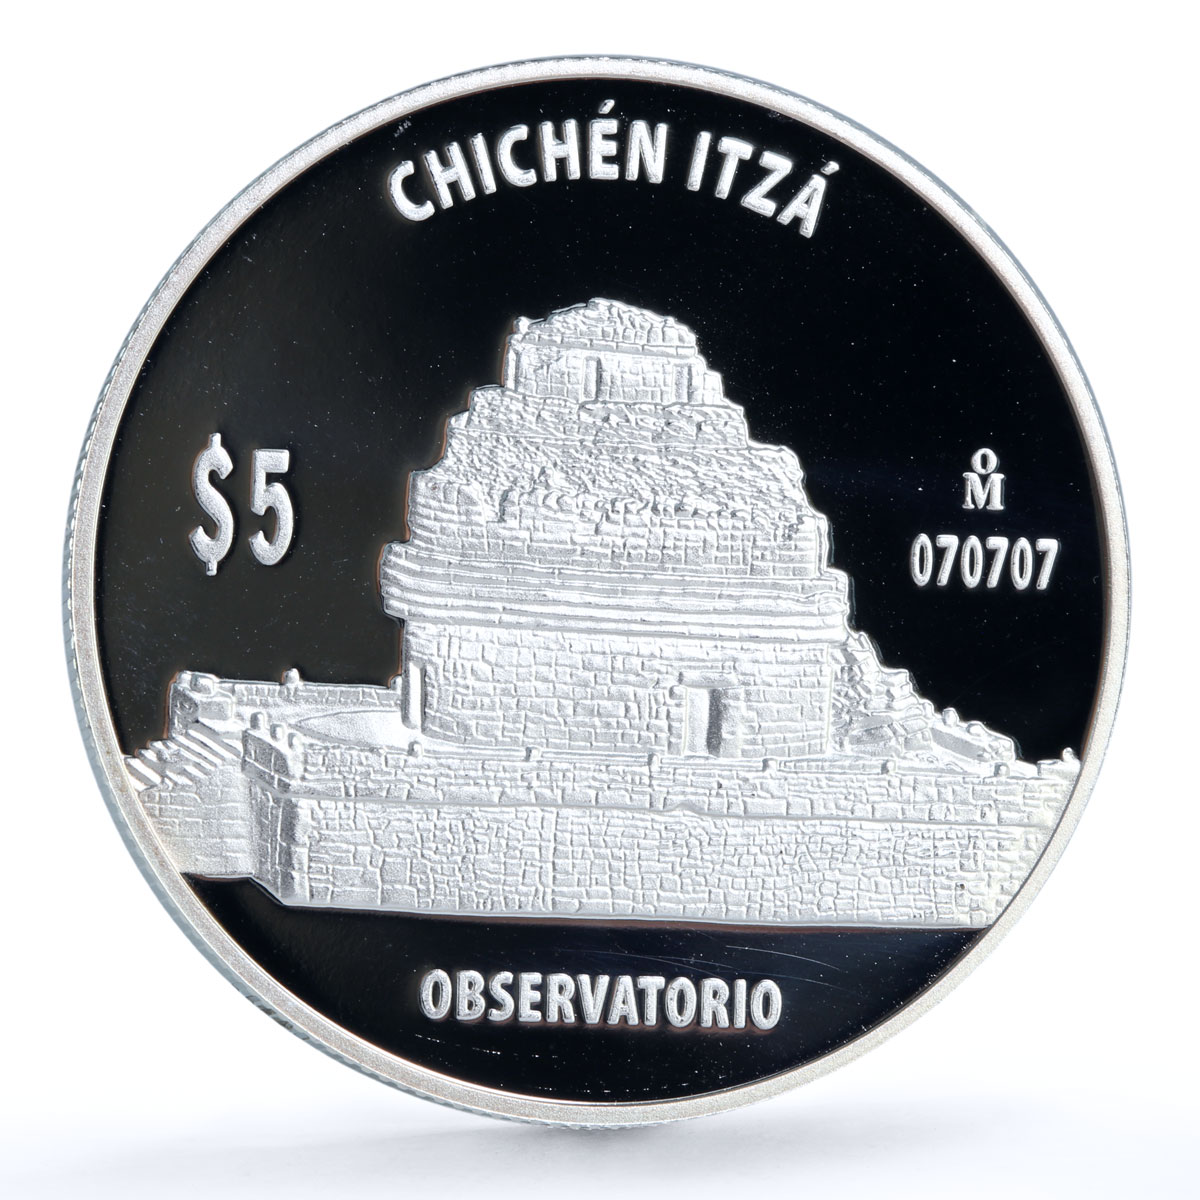 Mexico 5 pesos Chichen Itza Observation Building Architecture silver coin 2012